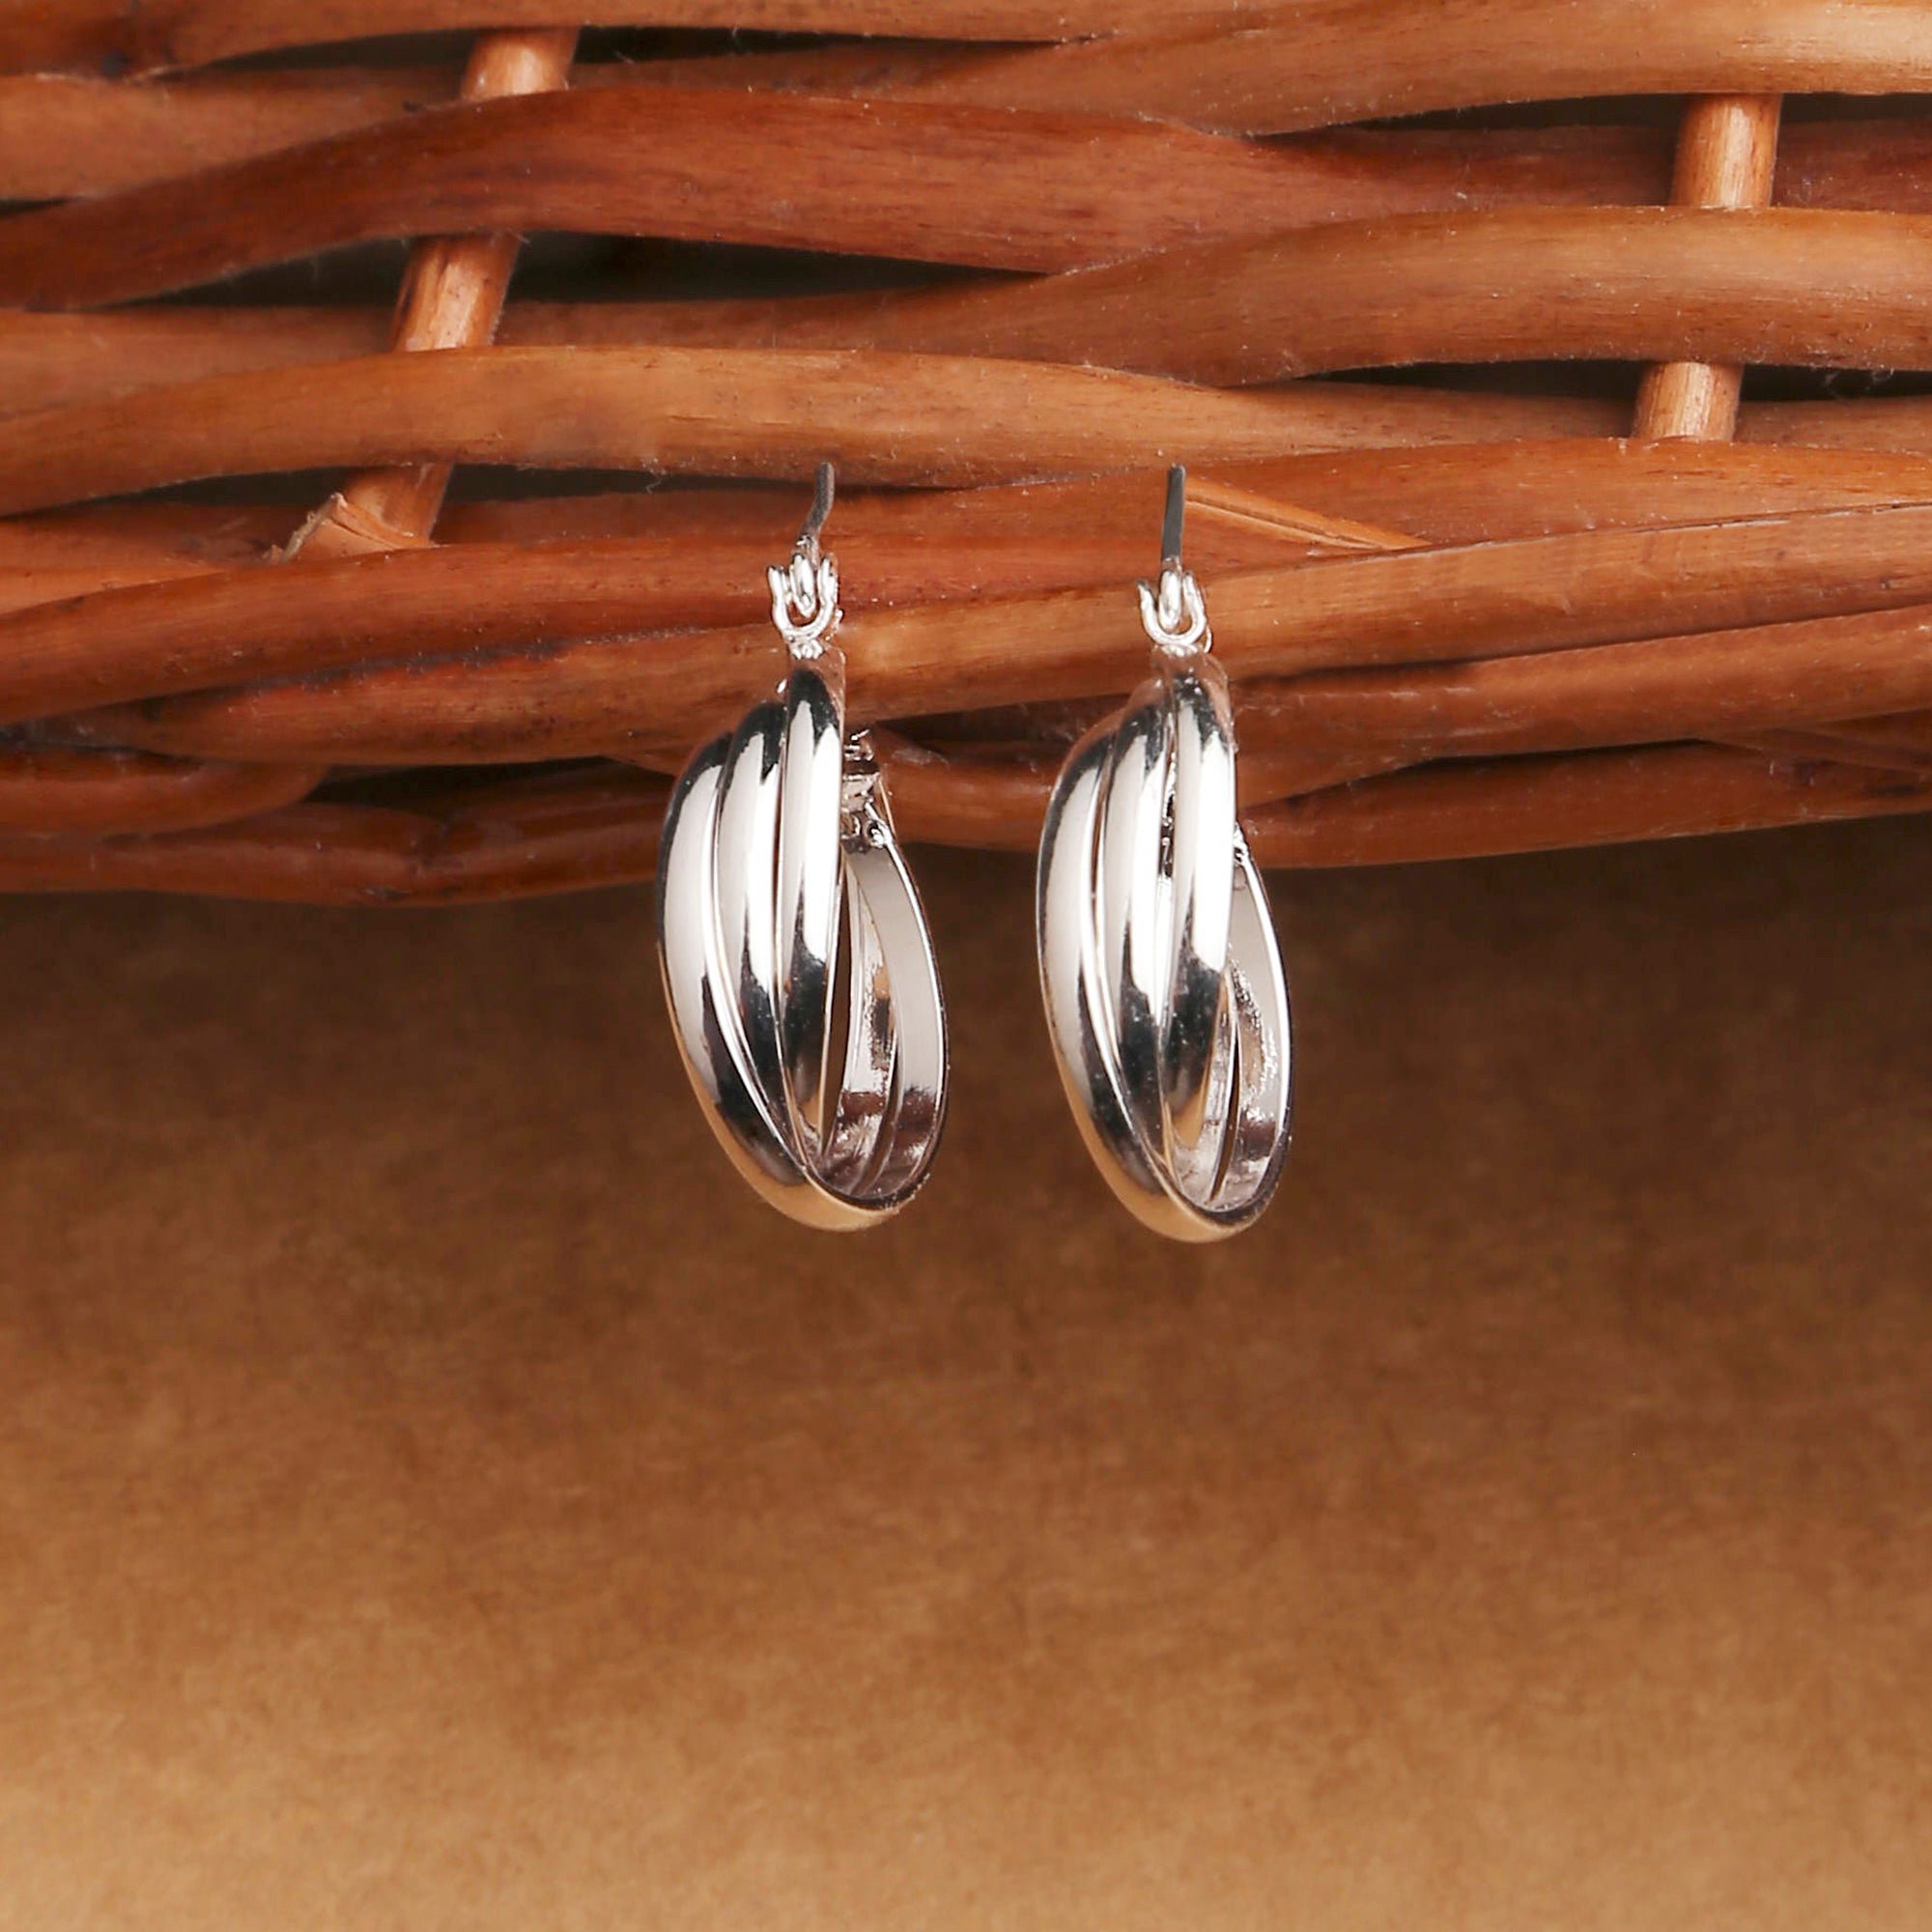 Accessorize London Women's Silver Twisted Silver Hoop Earrings